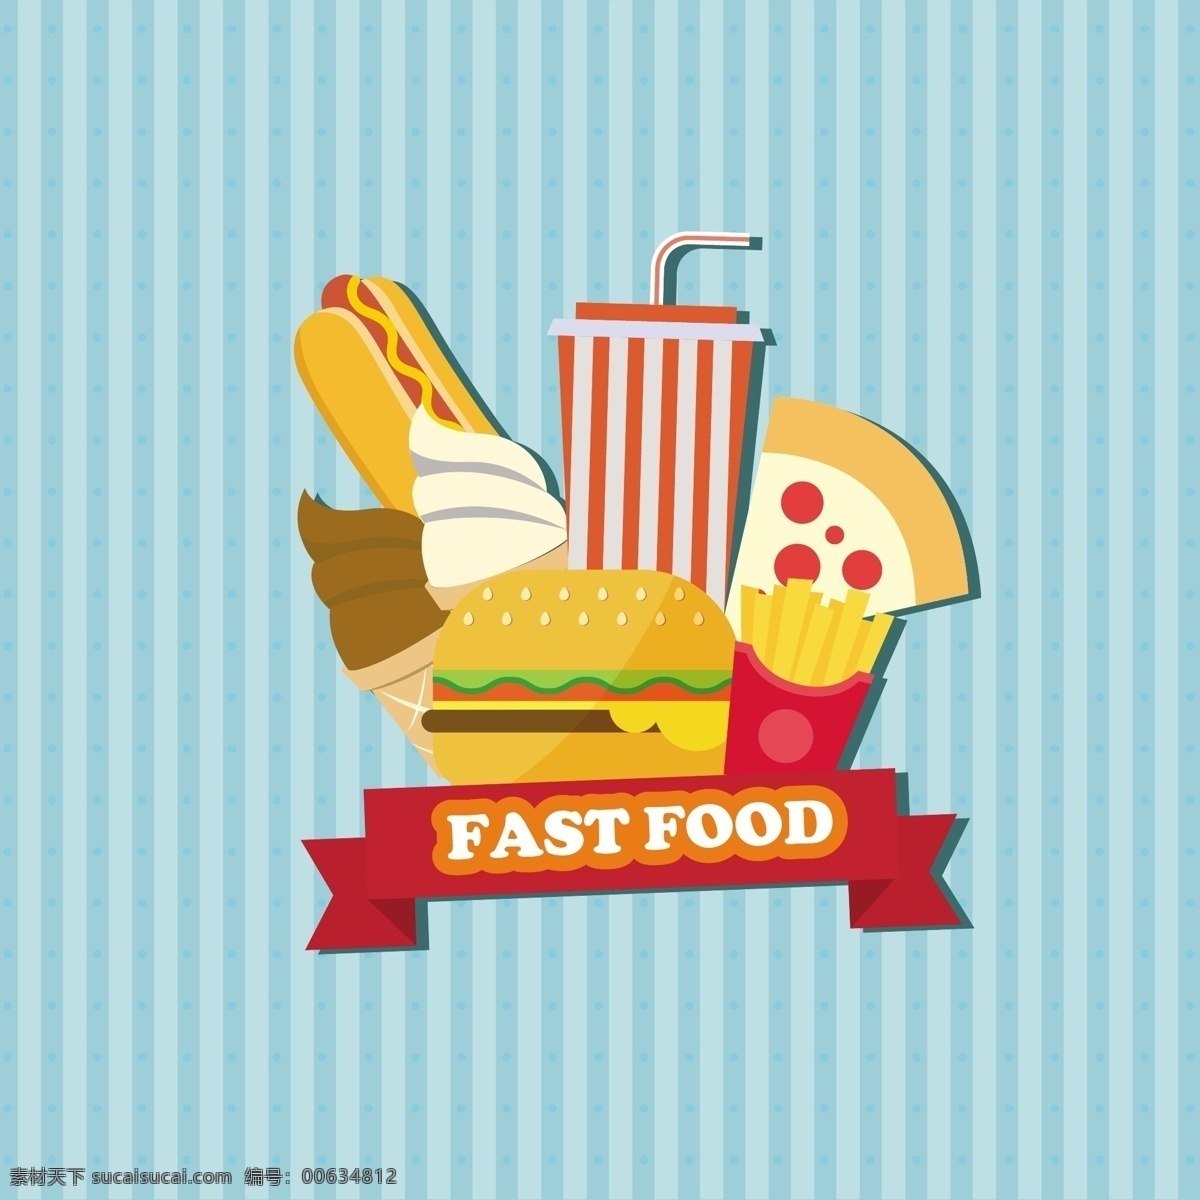 扁平化 卡通 快餐 标志 快餐标志 汉堡 薯条 披萨 手绘食物 汽水 雪糕 热狗